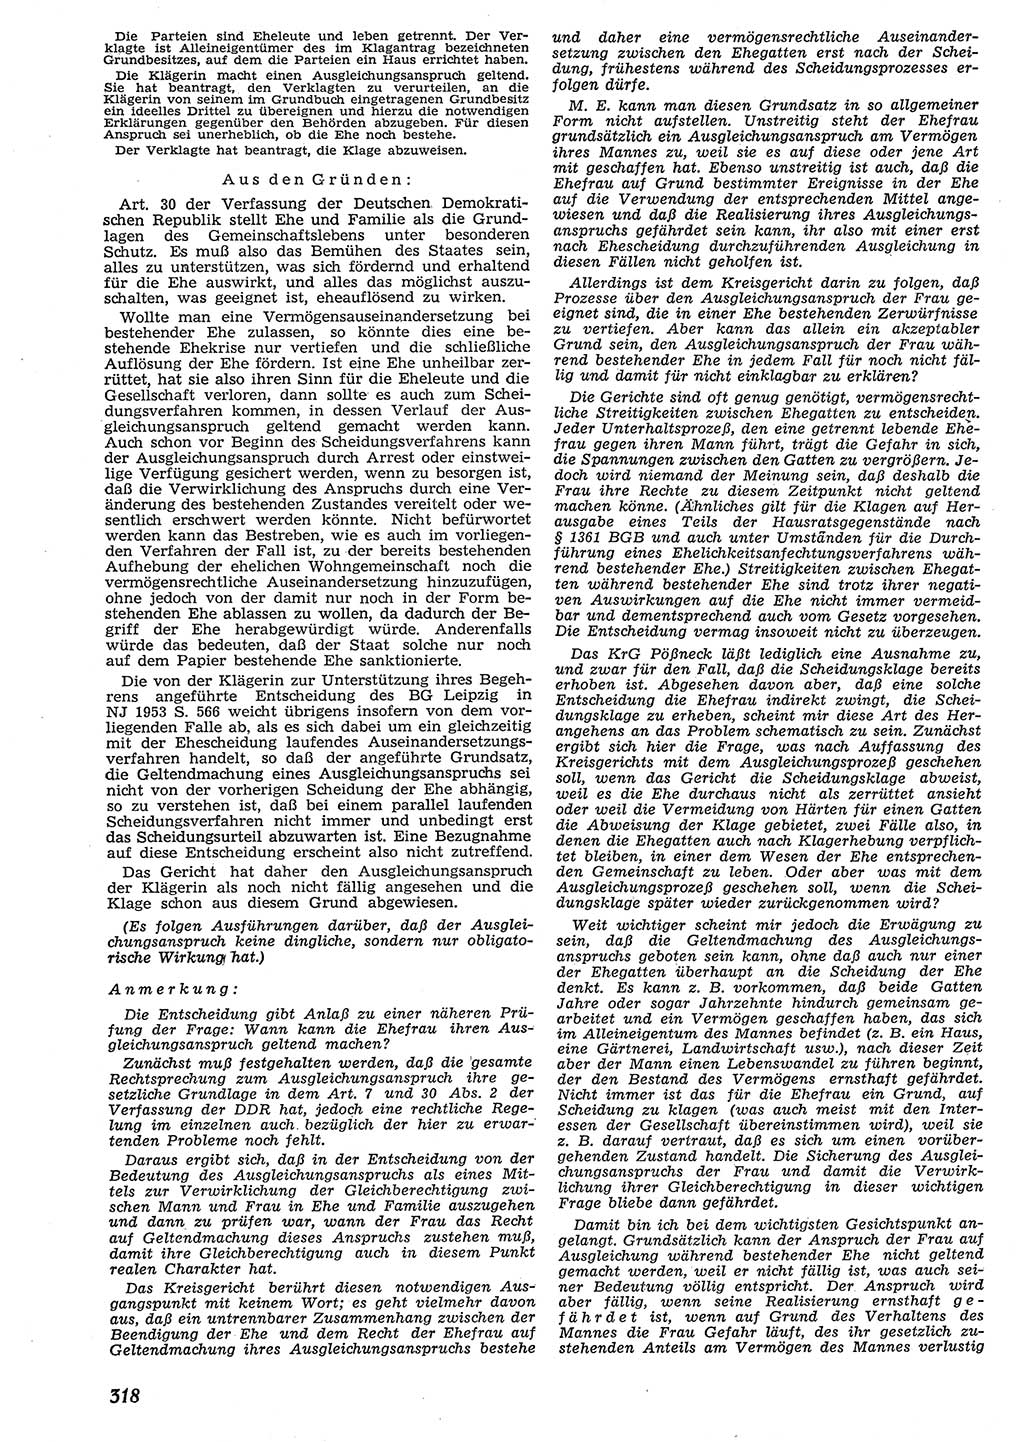 Neue Justiz (NJ), Zeitschrift für Recht und Rechtswissenschaft [Deutsche Demokratische Republik (DDR)], 10. Jahrgang 1956, Seite 318 (NJ DDR 1956, S. 318)